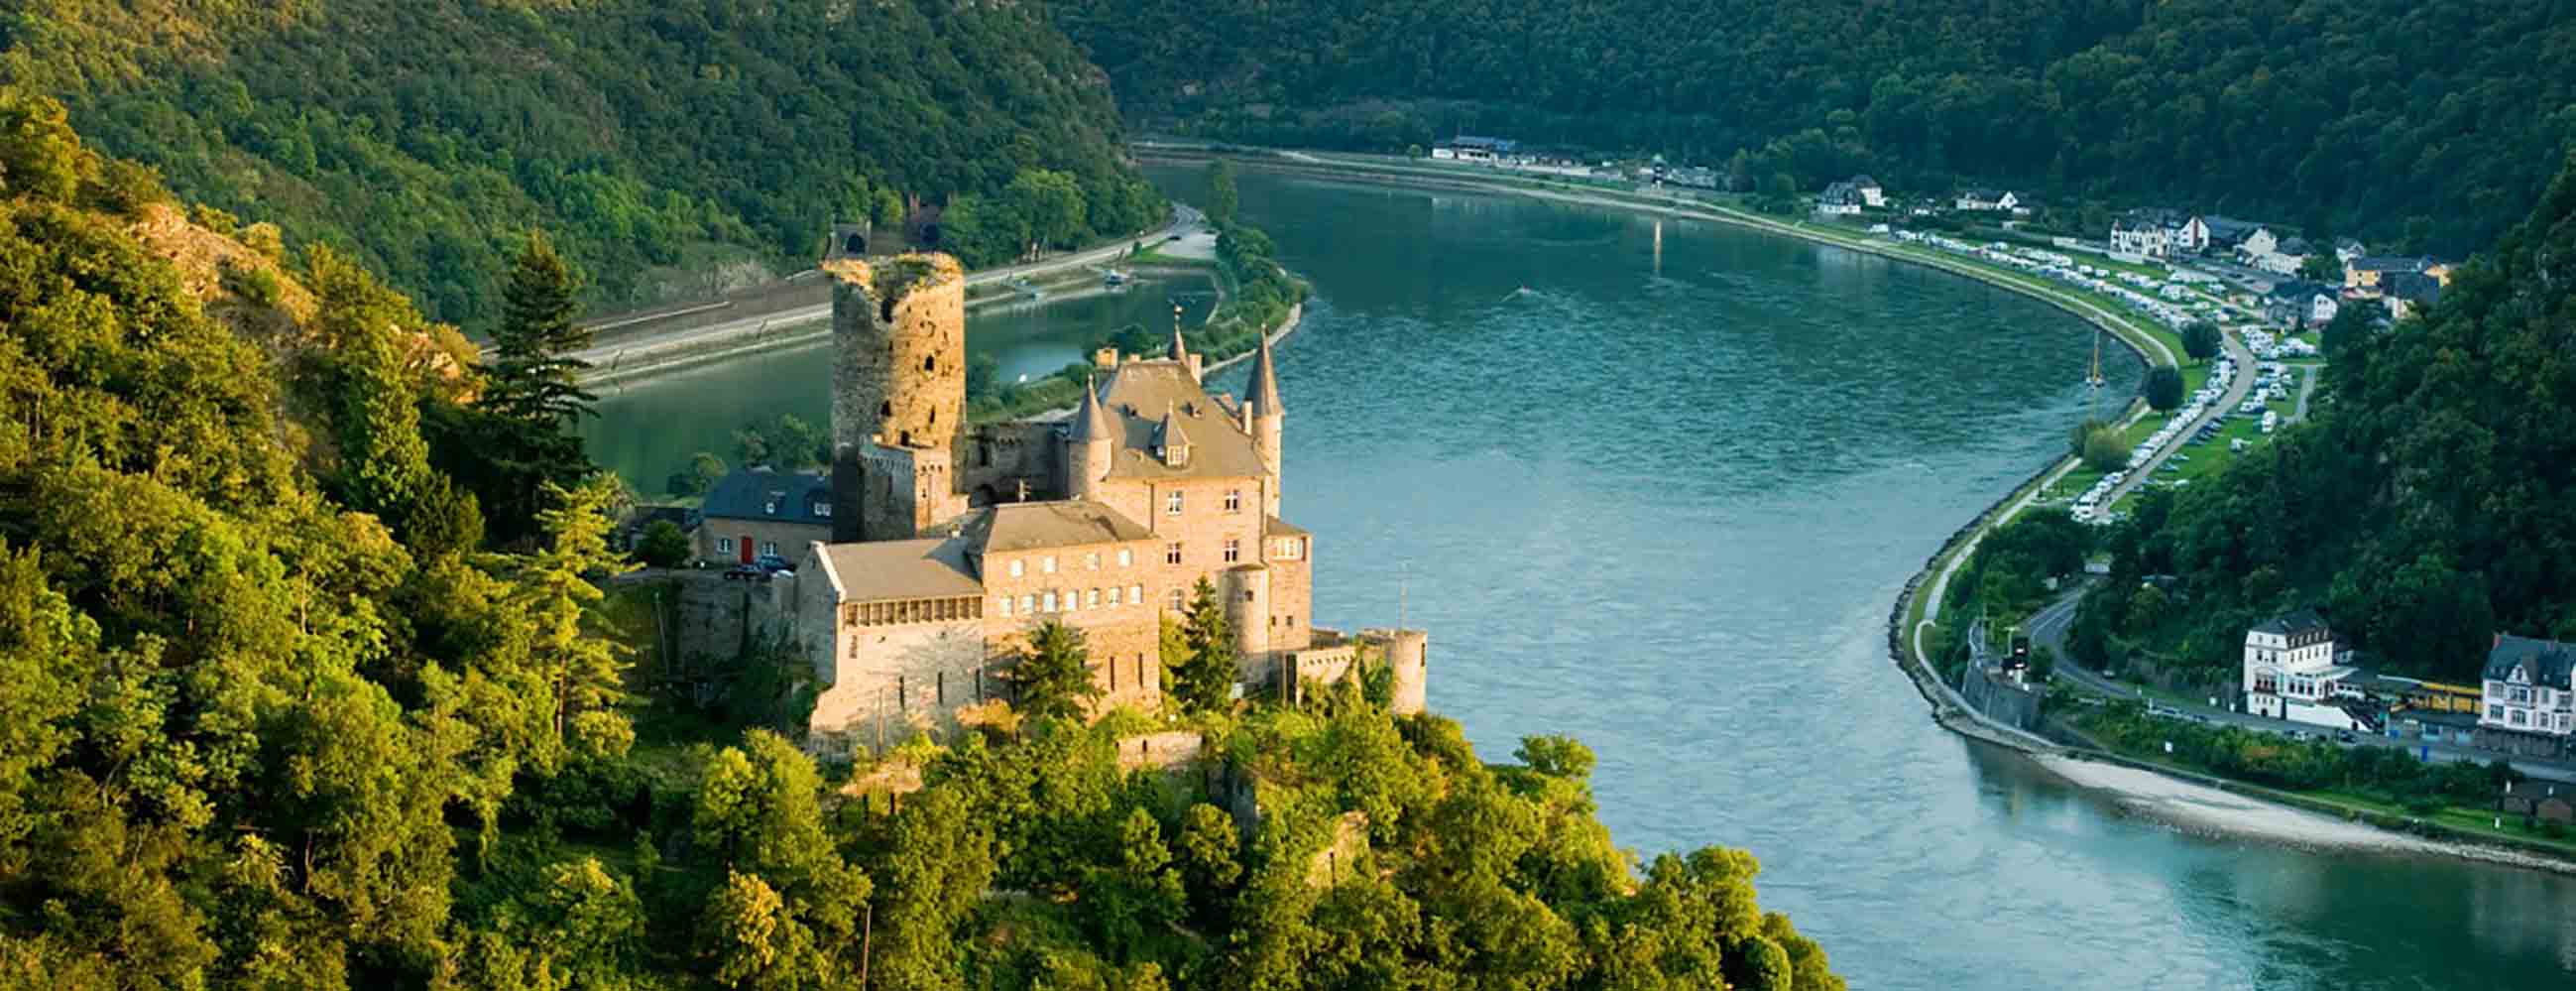  Vẻ đẹp lãng mạn của sông Rhein đoạn qua nước Đức.